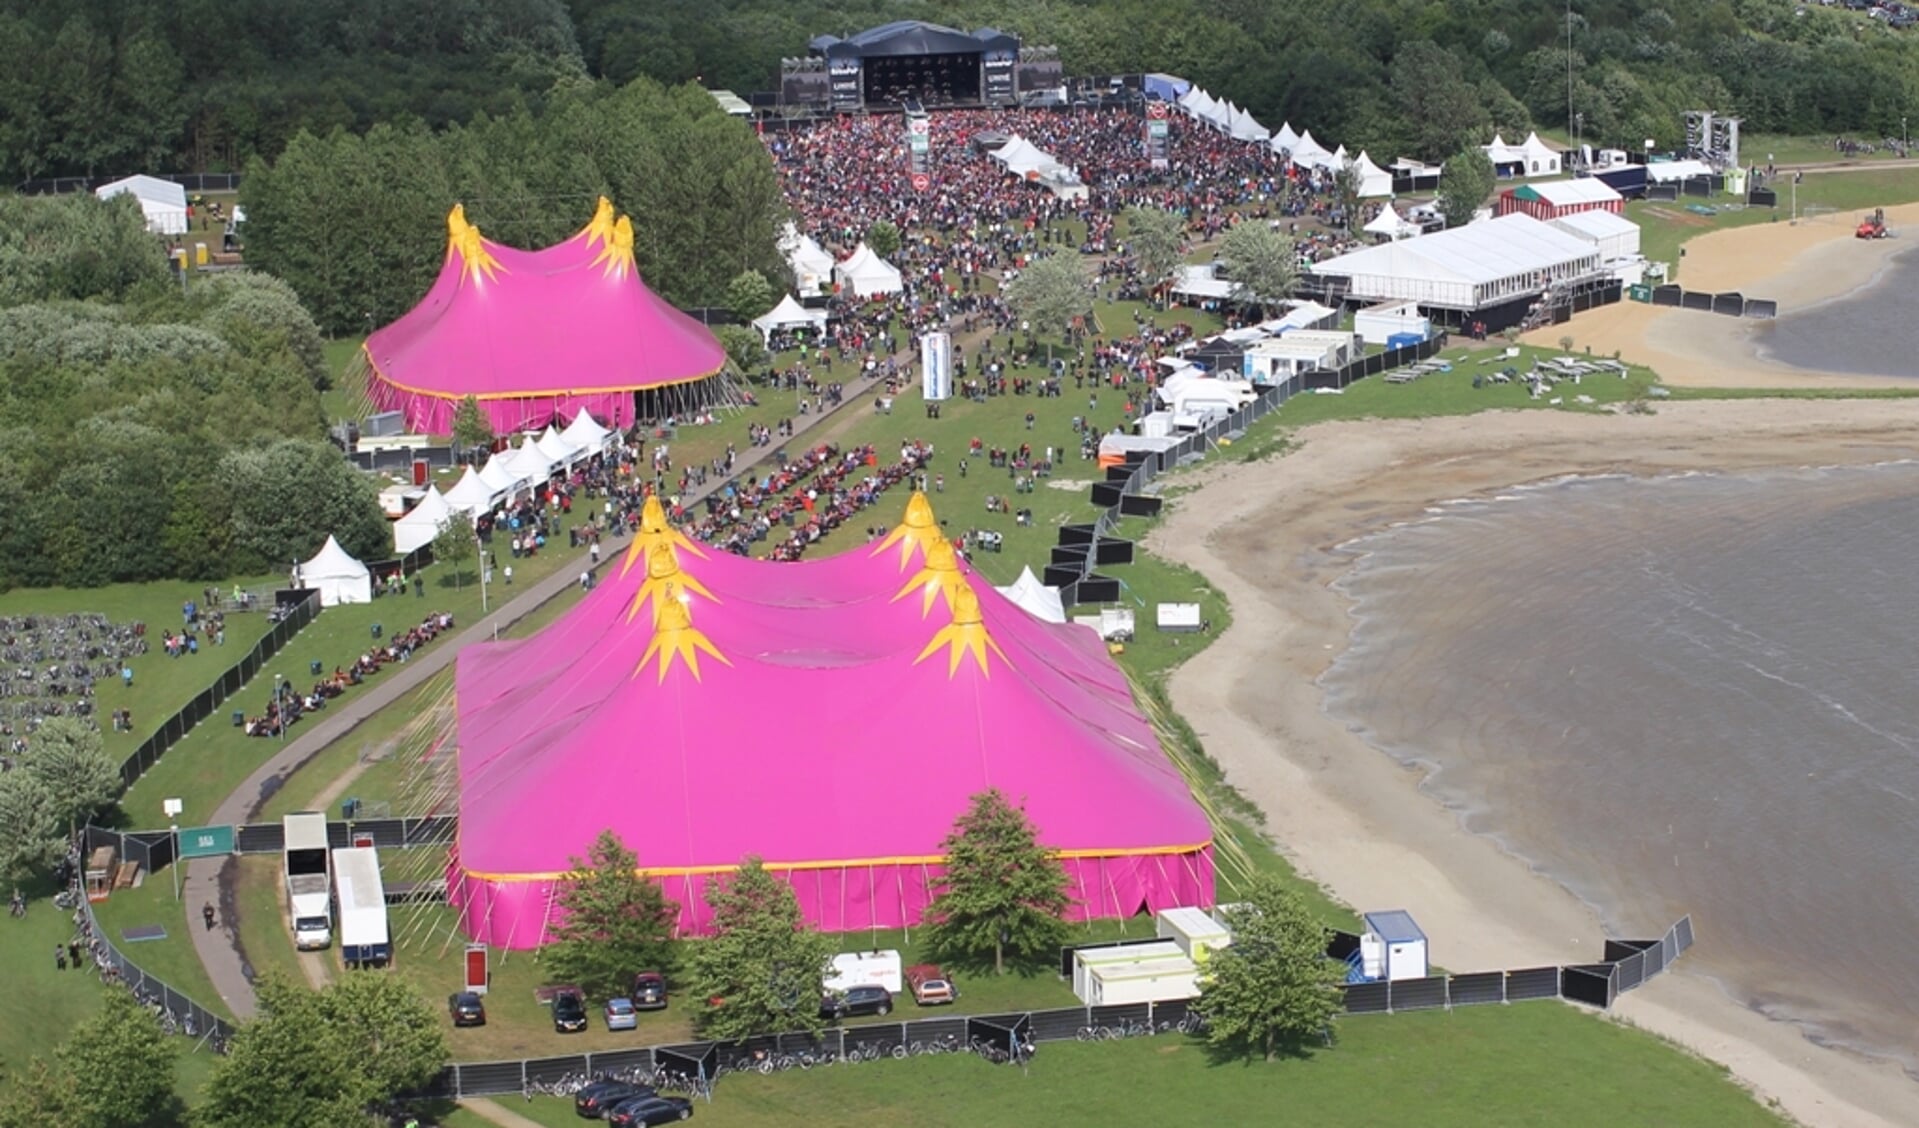 Het Hello Festival in Emmen kan een bijdrage tegemoet zien.